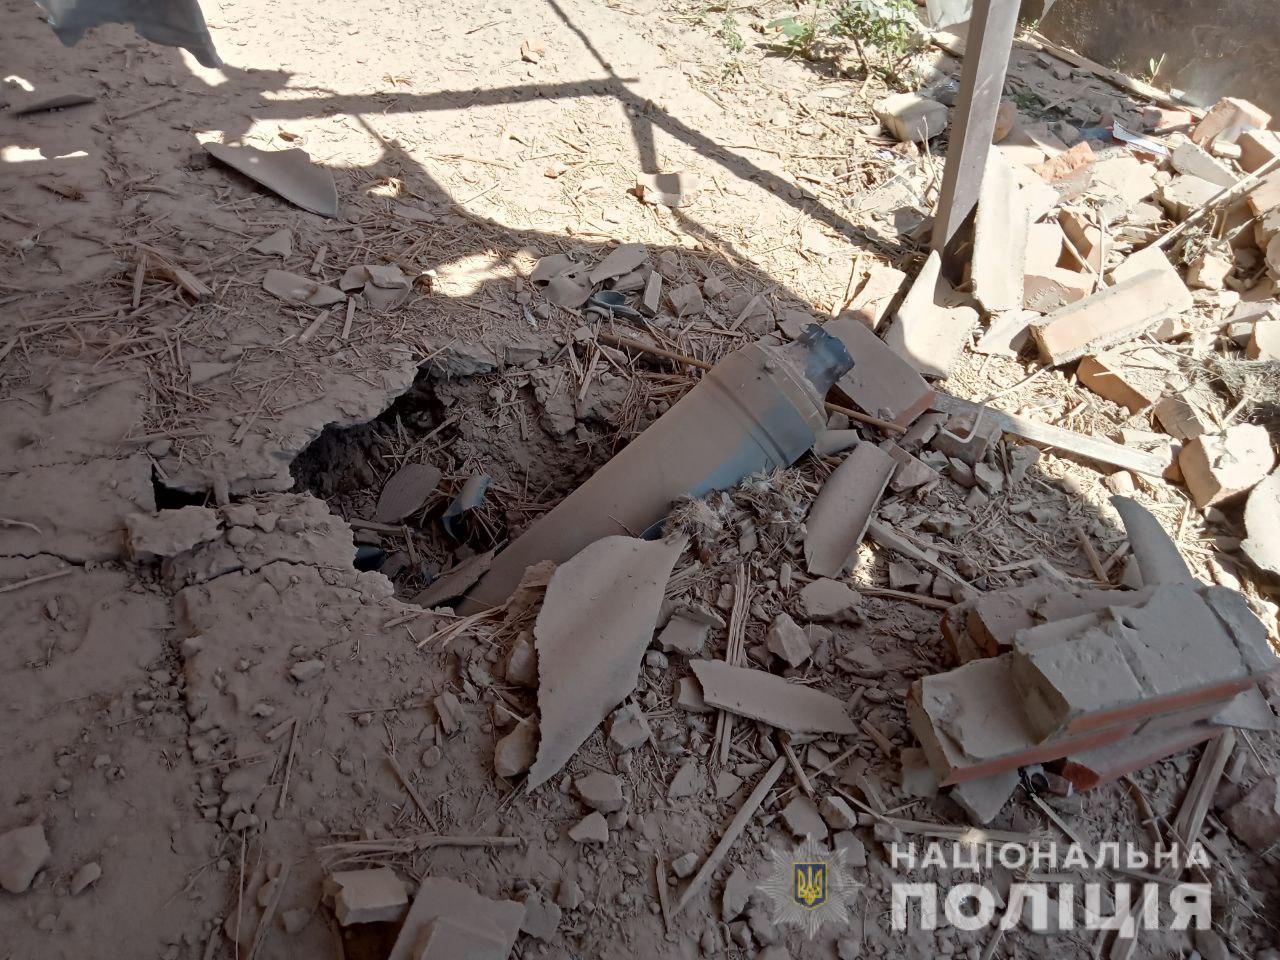 Били из “Ураганов” и танков: 26 мая в Донецкой области оккупанты разрушили 94 мирных объекта. Есть погибшие 5